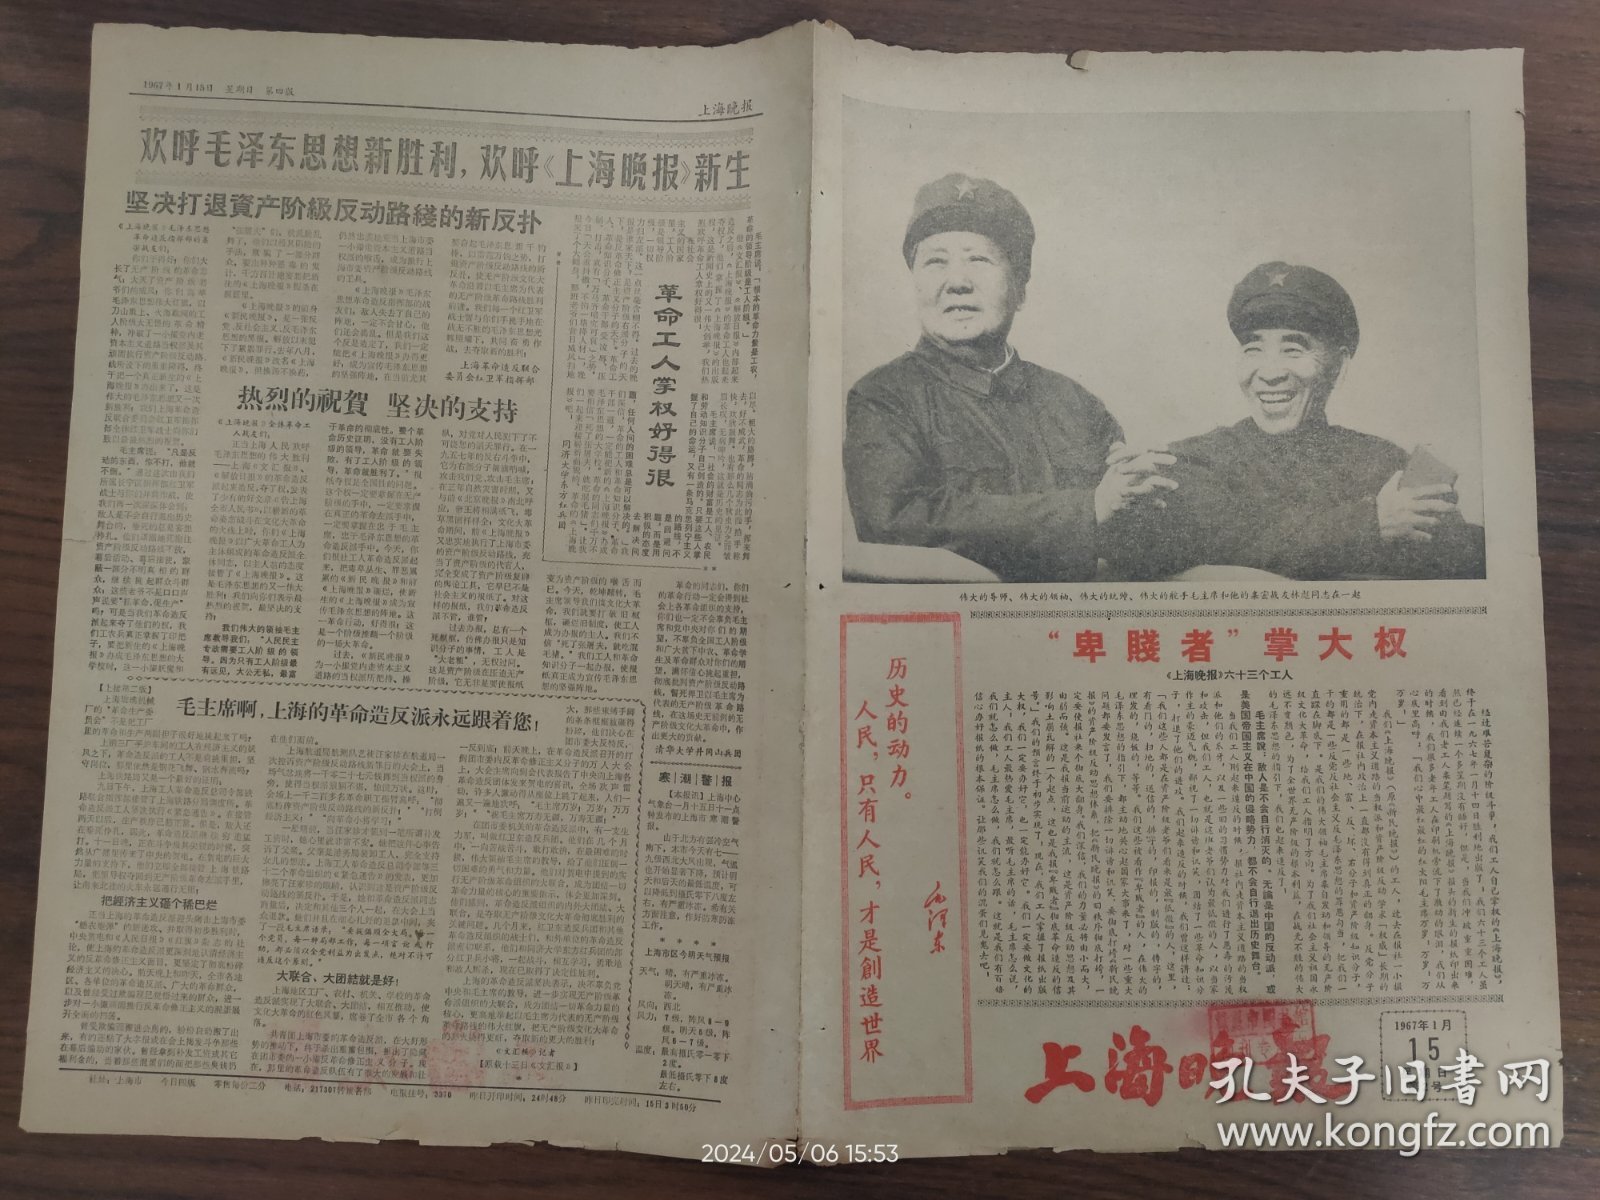 上海晚报-热烈欢呼《上海晚报》新生。